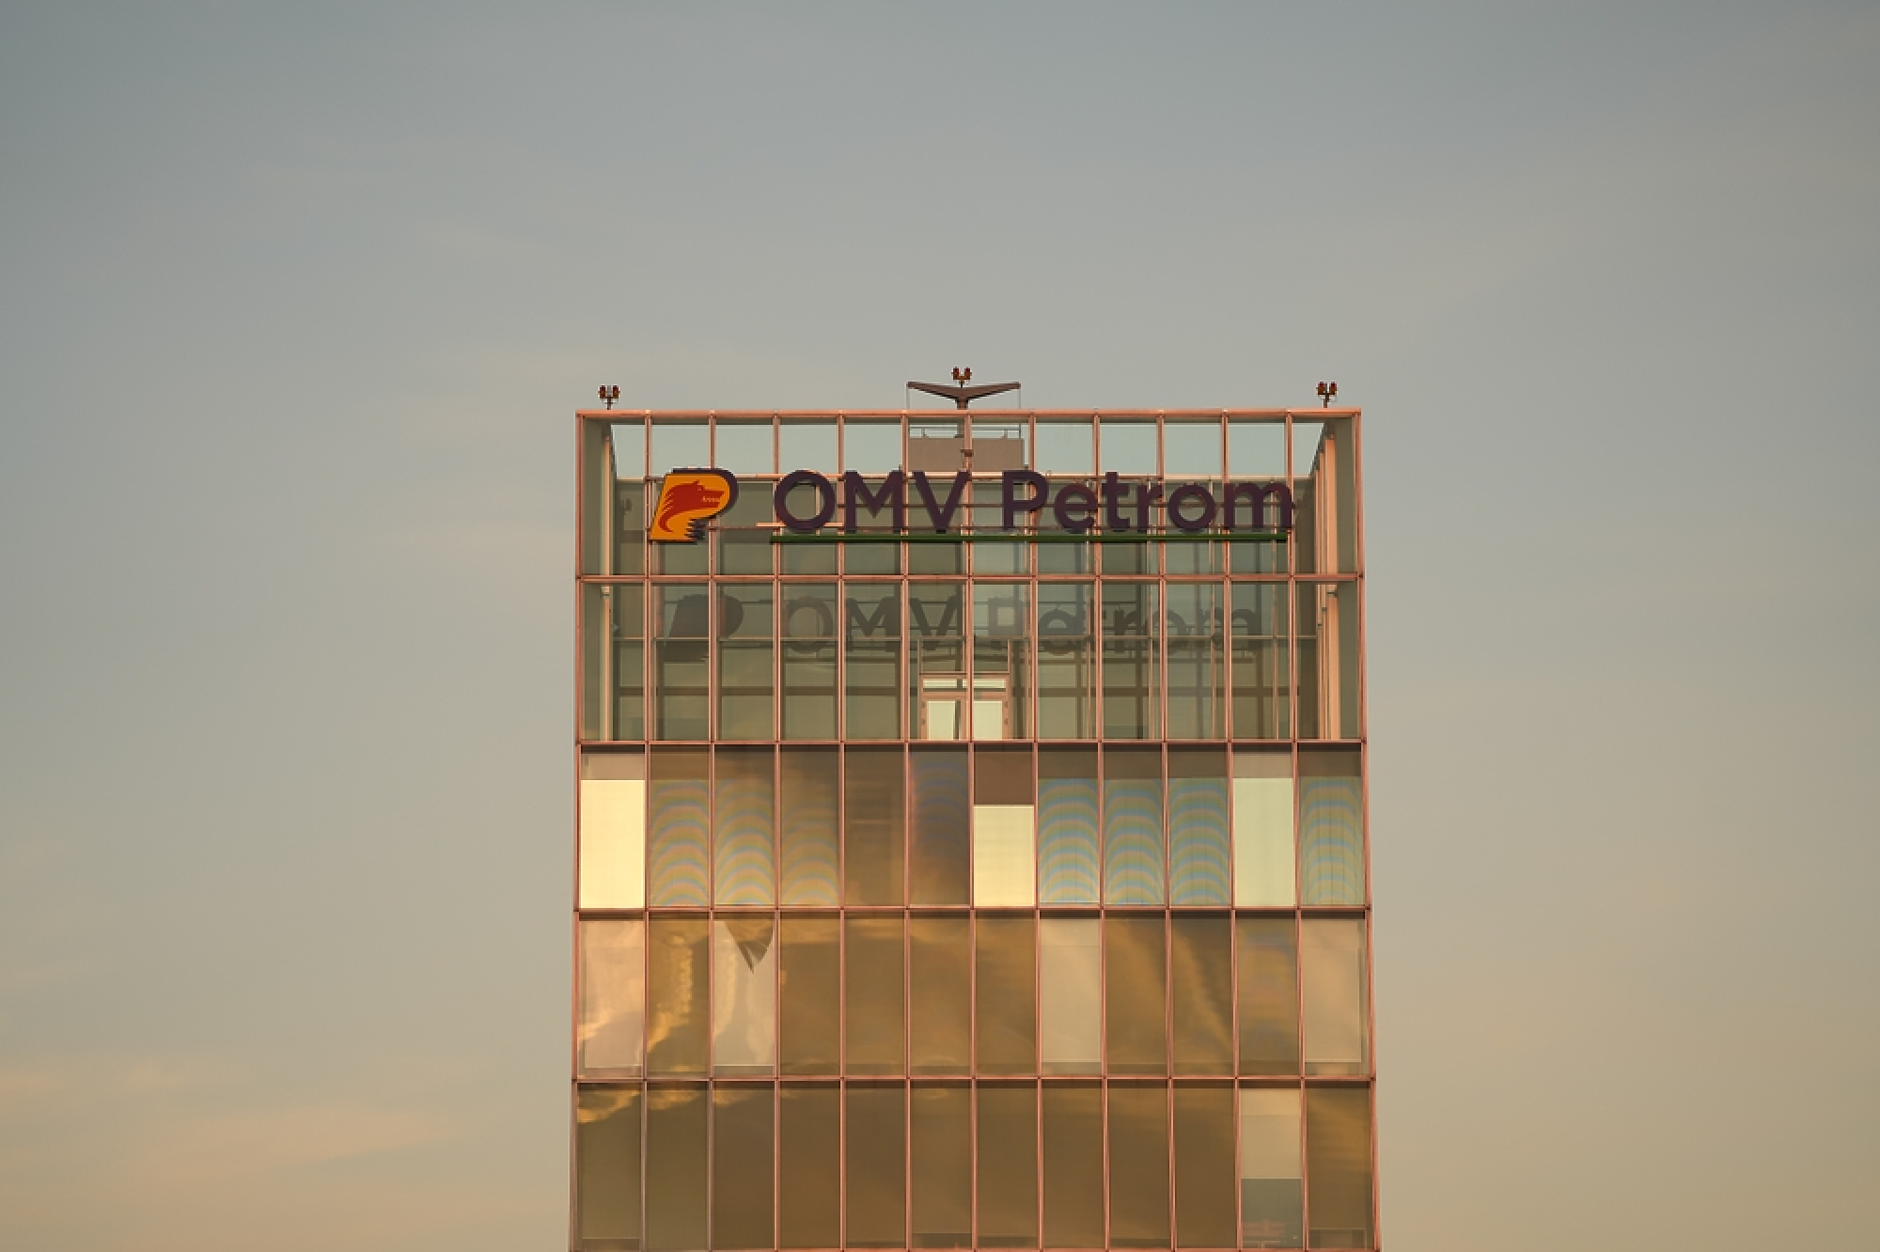 OMV Petrom взема дял от бизнесите с вятърна енергия и зареждане на електромобили в Румъния